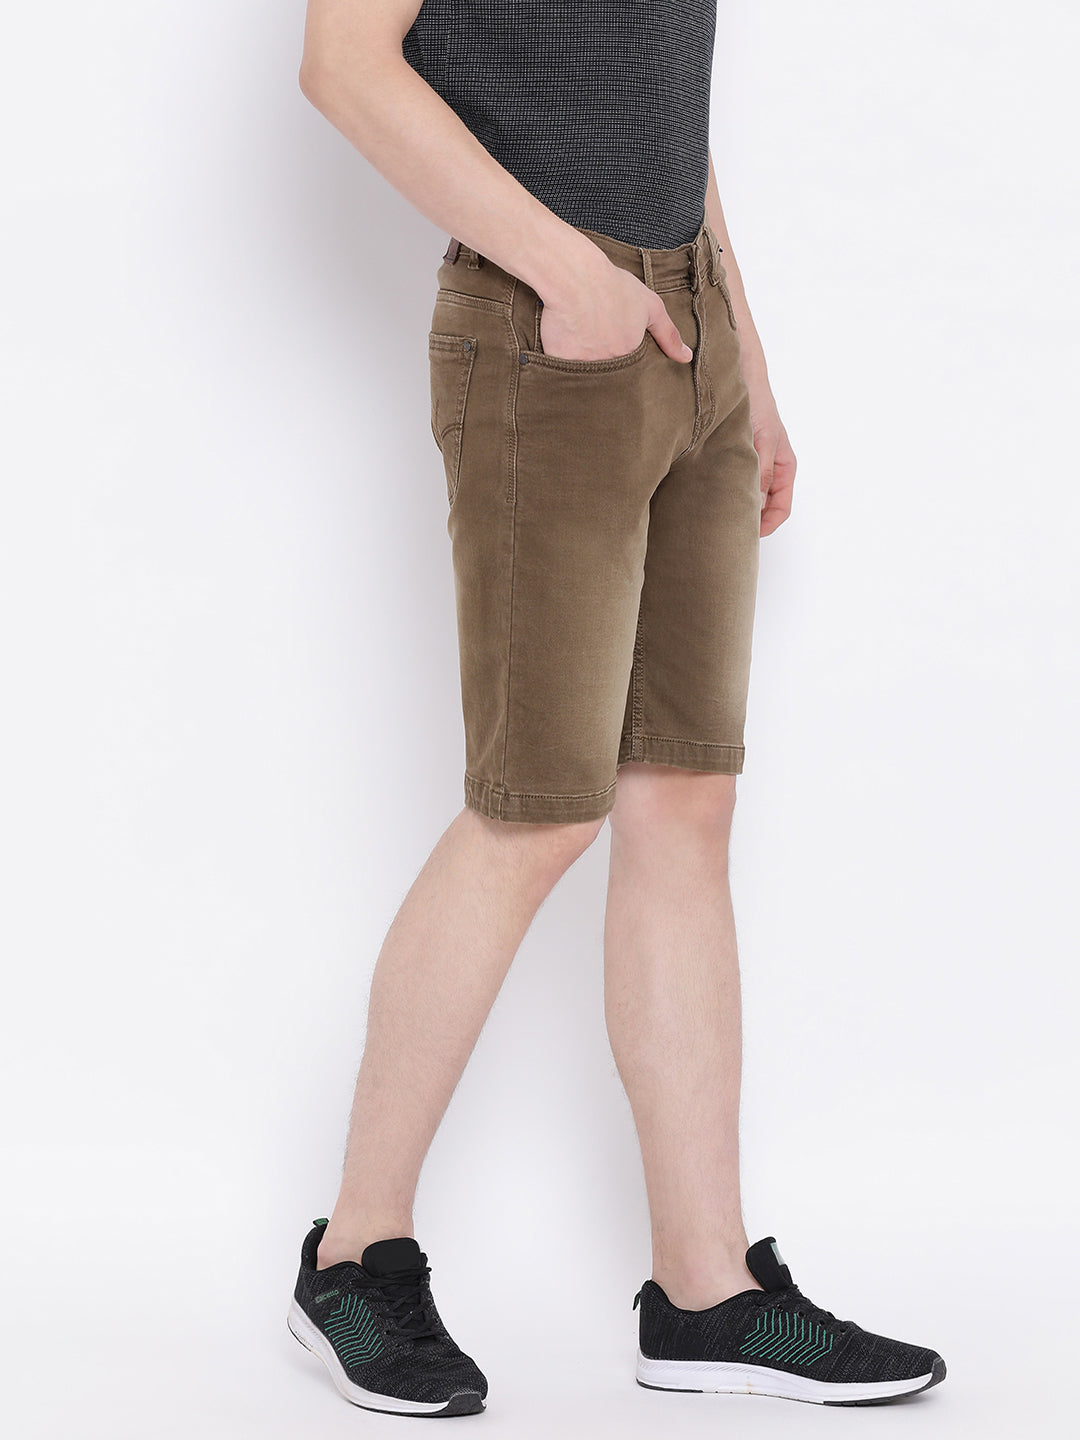 Brown shorts - Men Shorts